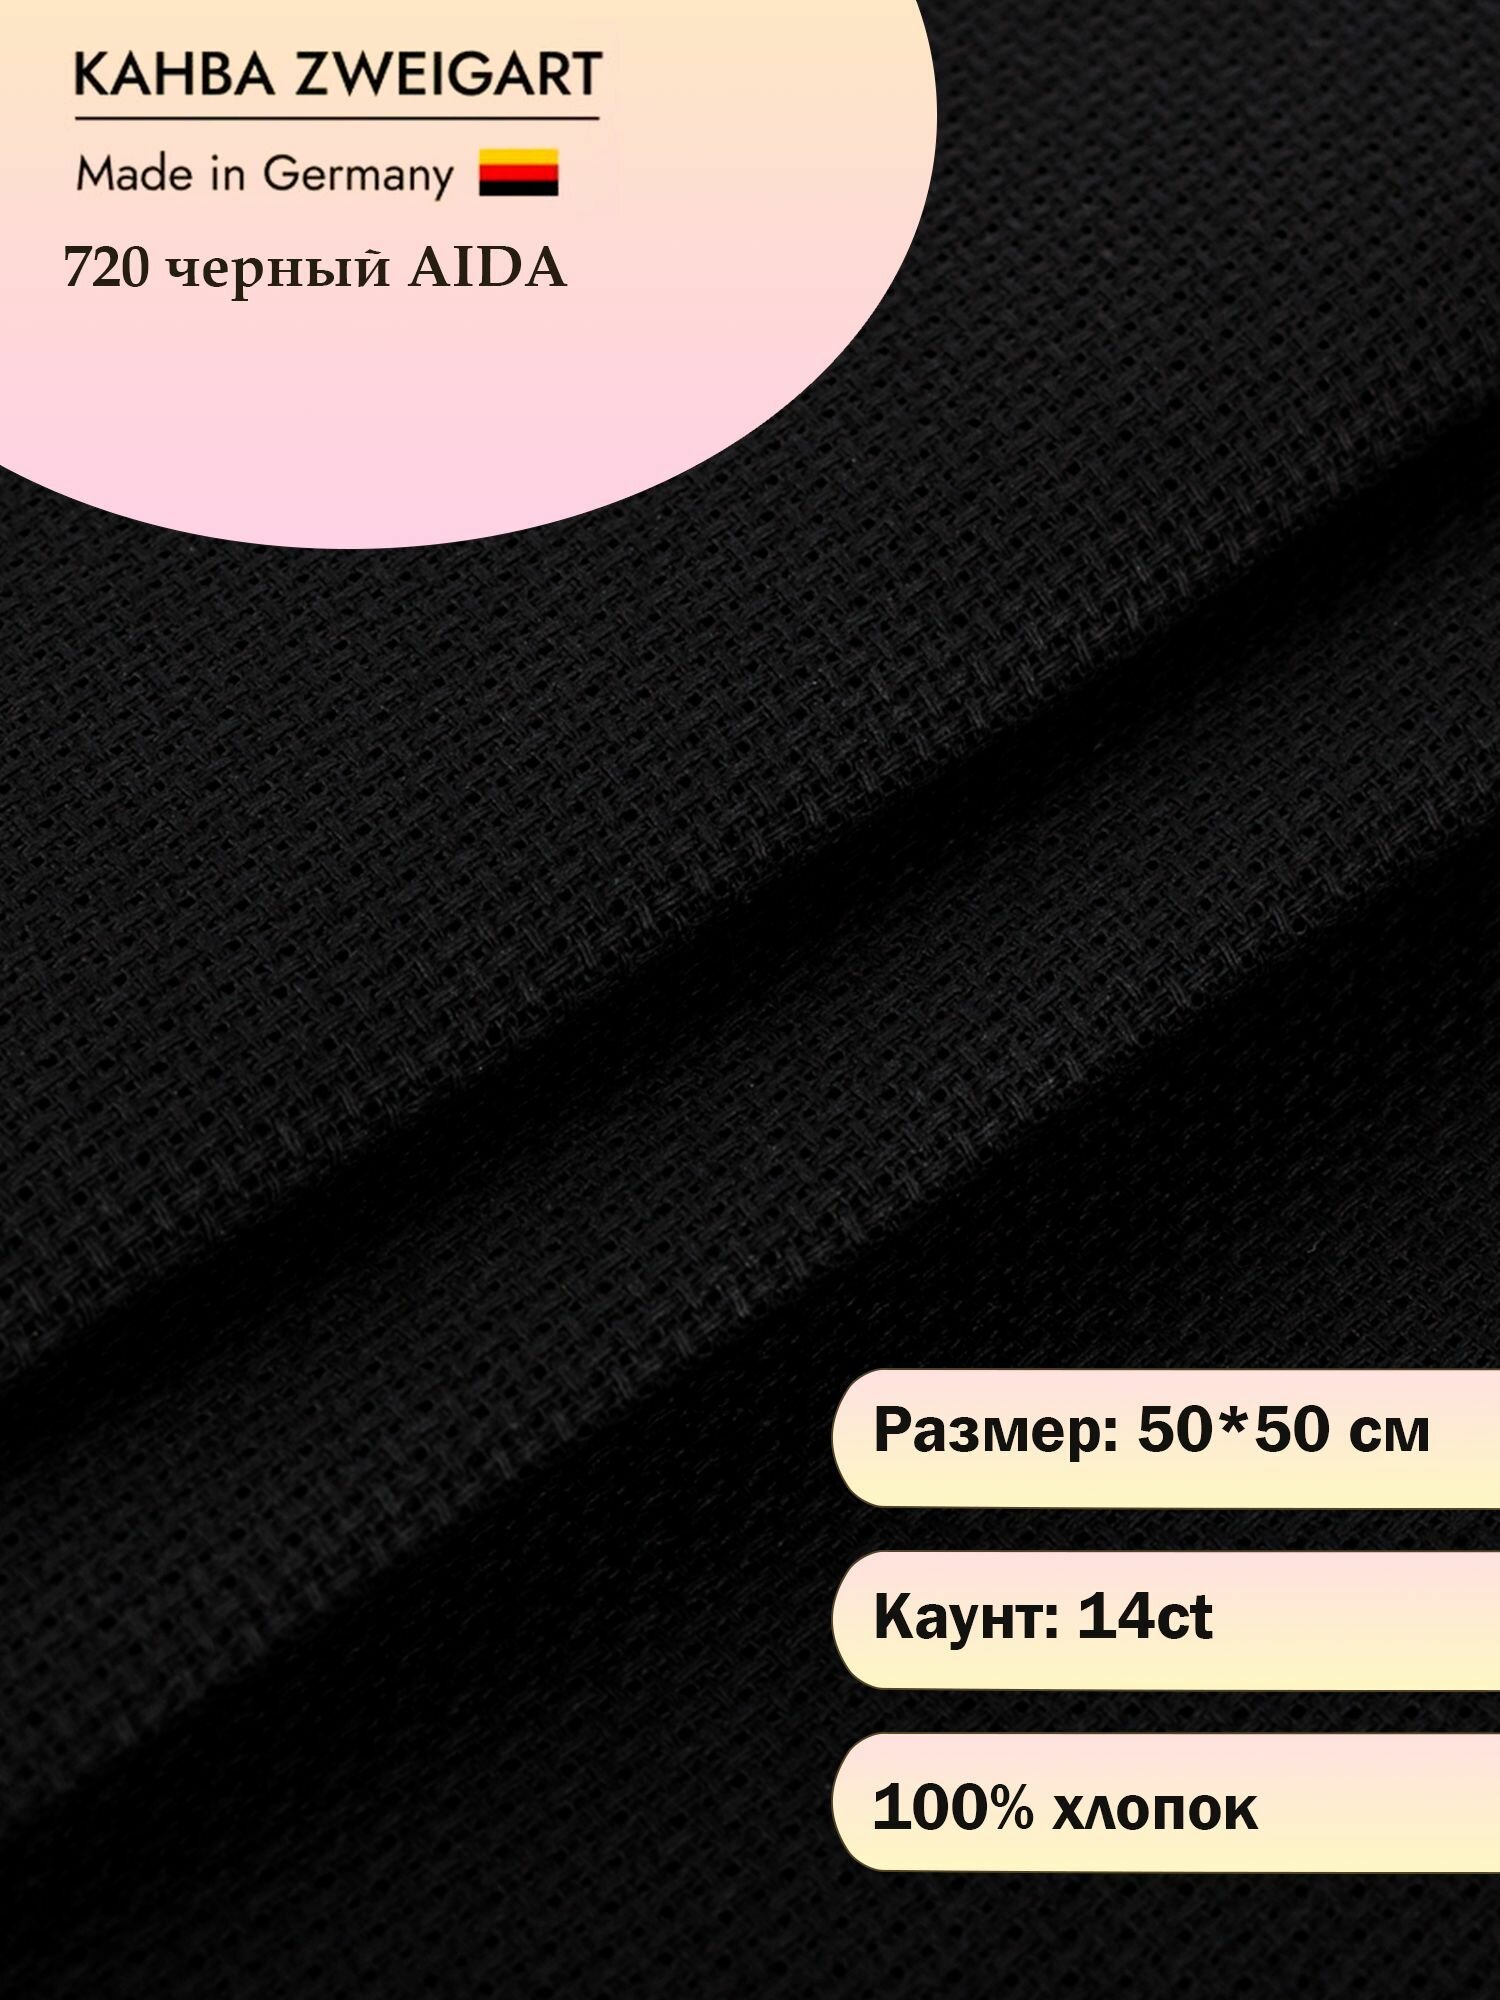 Канва для вышивания Zweigart Aida Premium 14ct 50x50 см, 720 черная